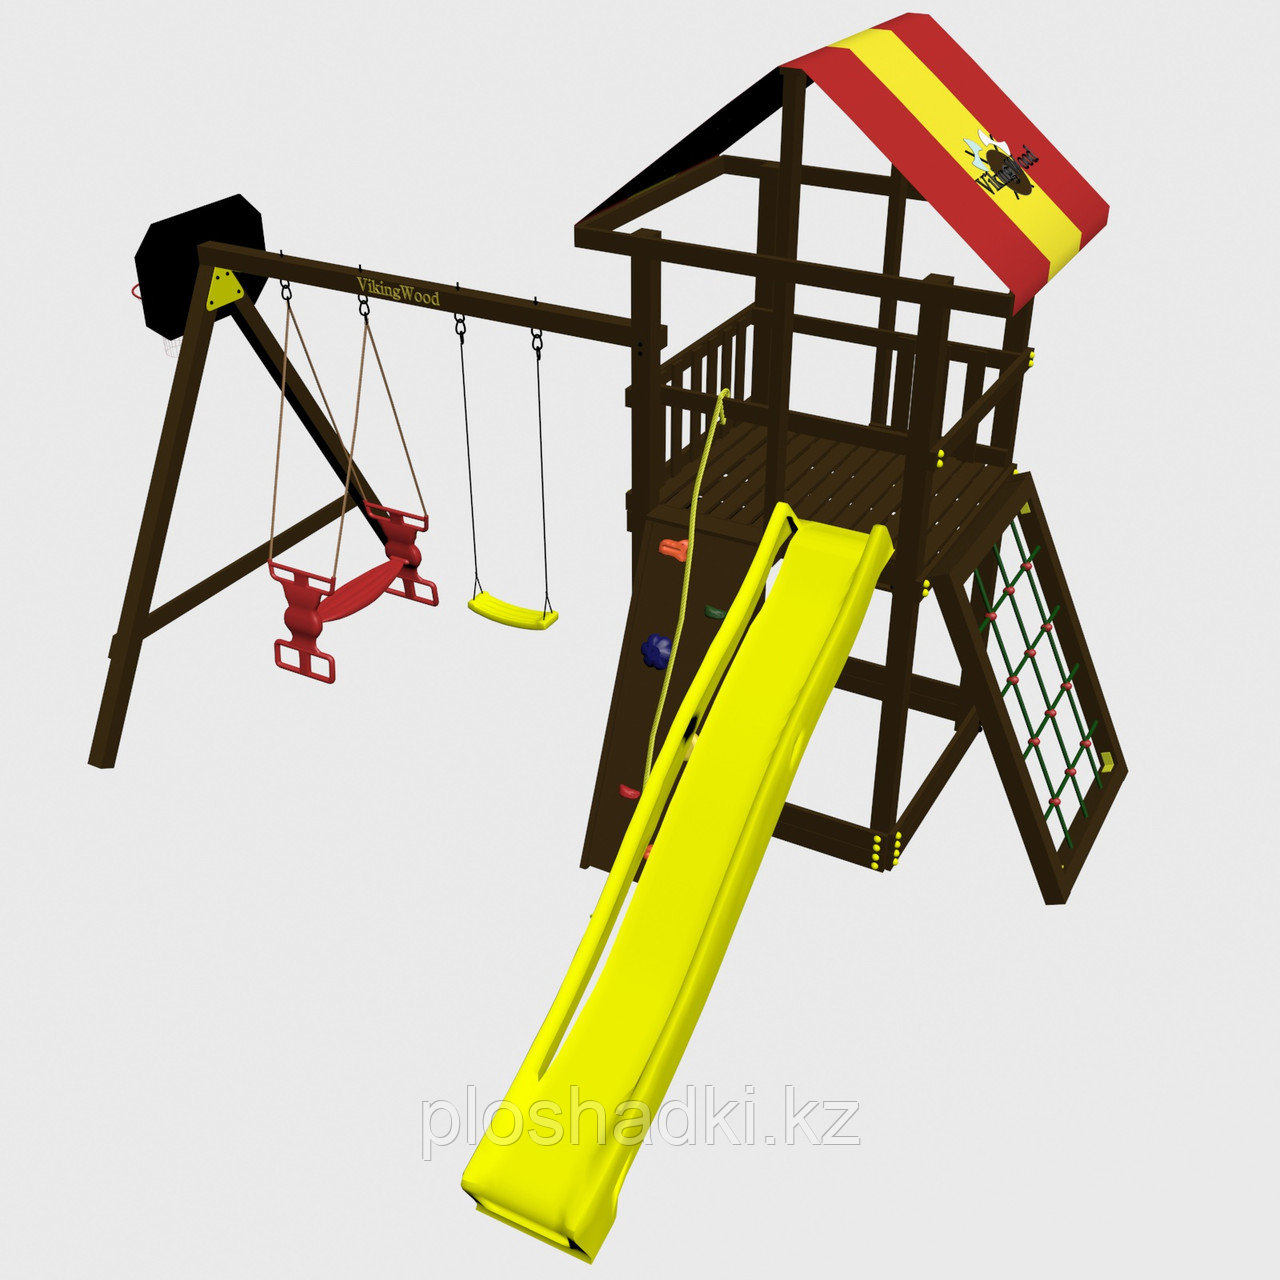 Игровой комплекс  "Родео с качелями Дуэт", цветные паруса, лестница из дерева, скалодром, качели, горка